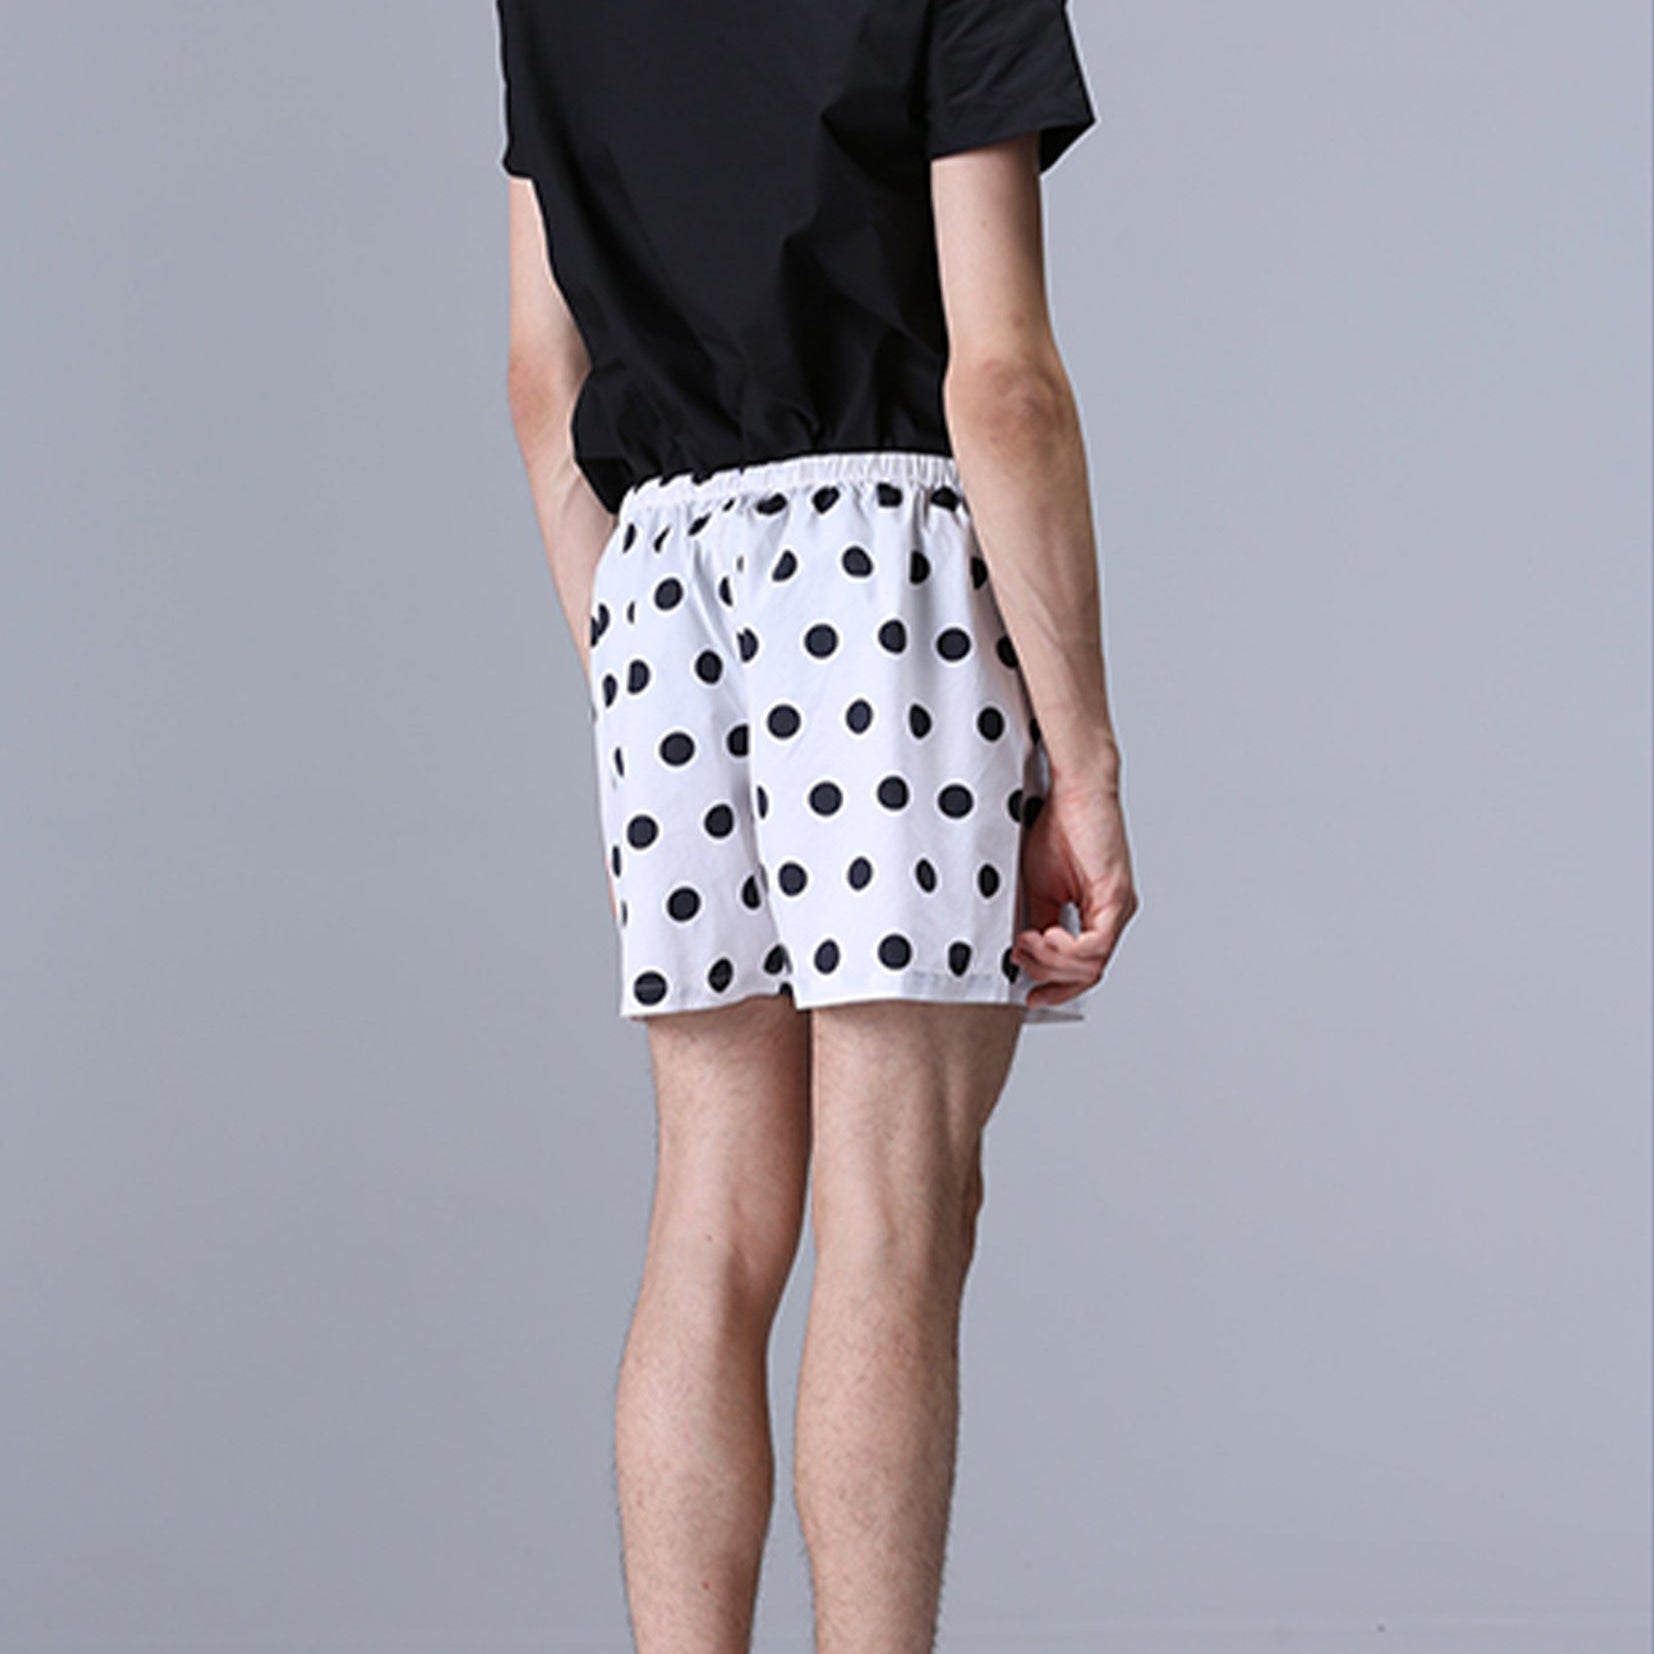 Unisex boxer shorts underwear in polka dots